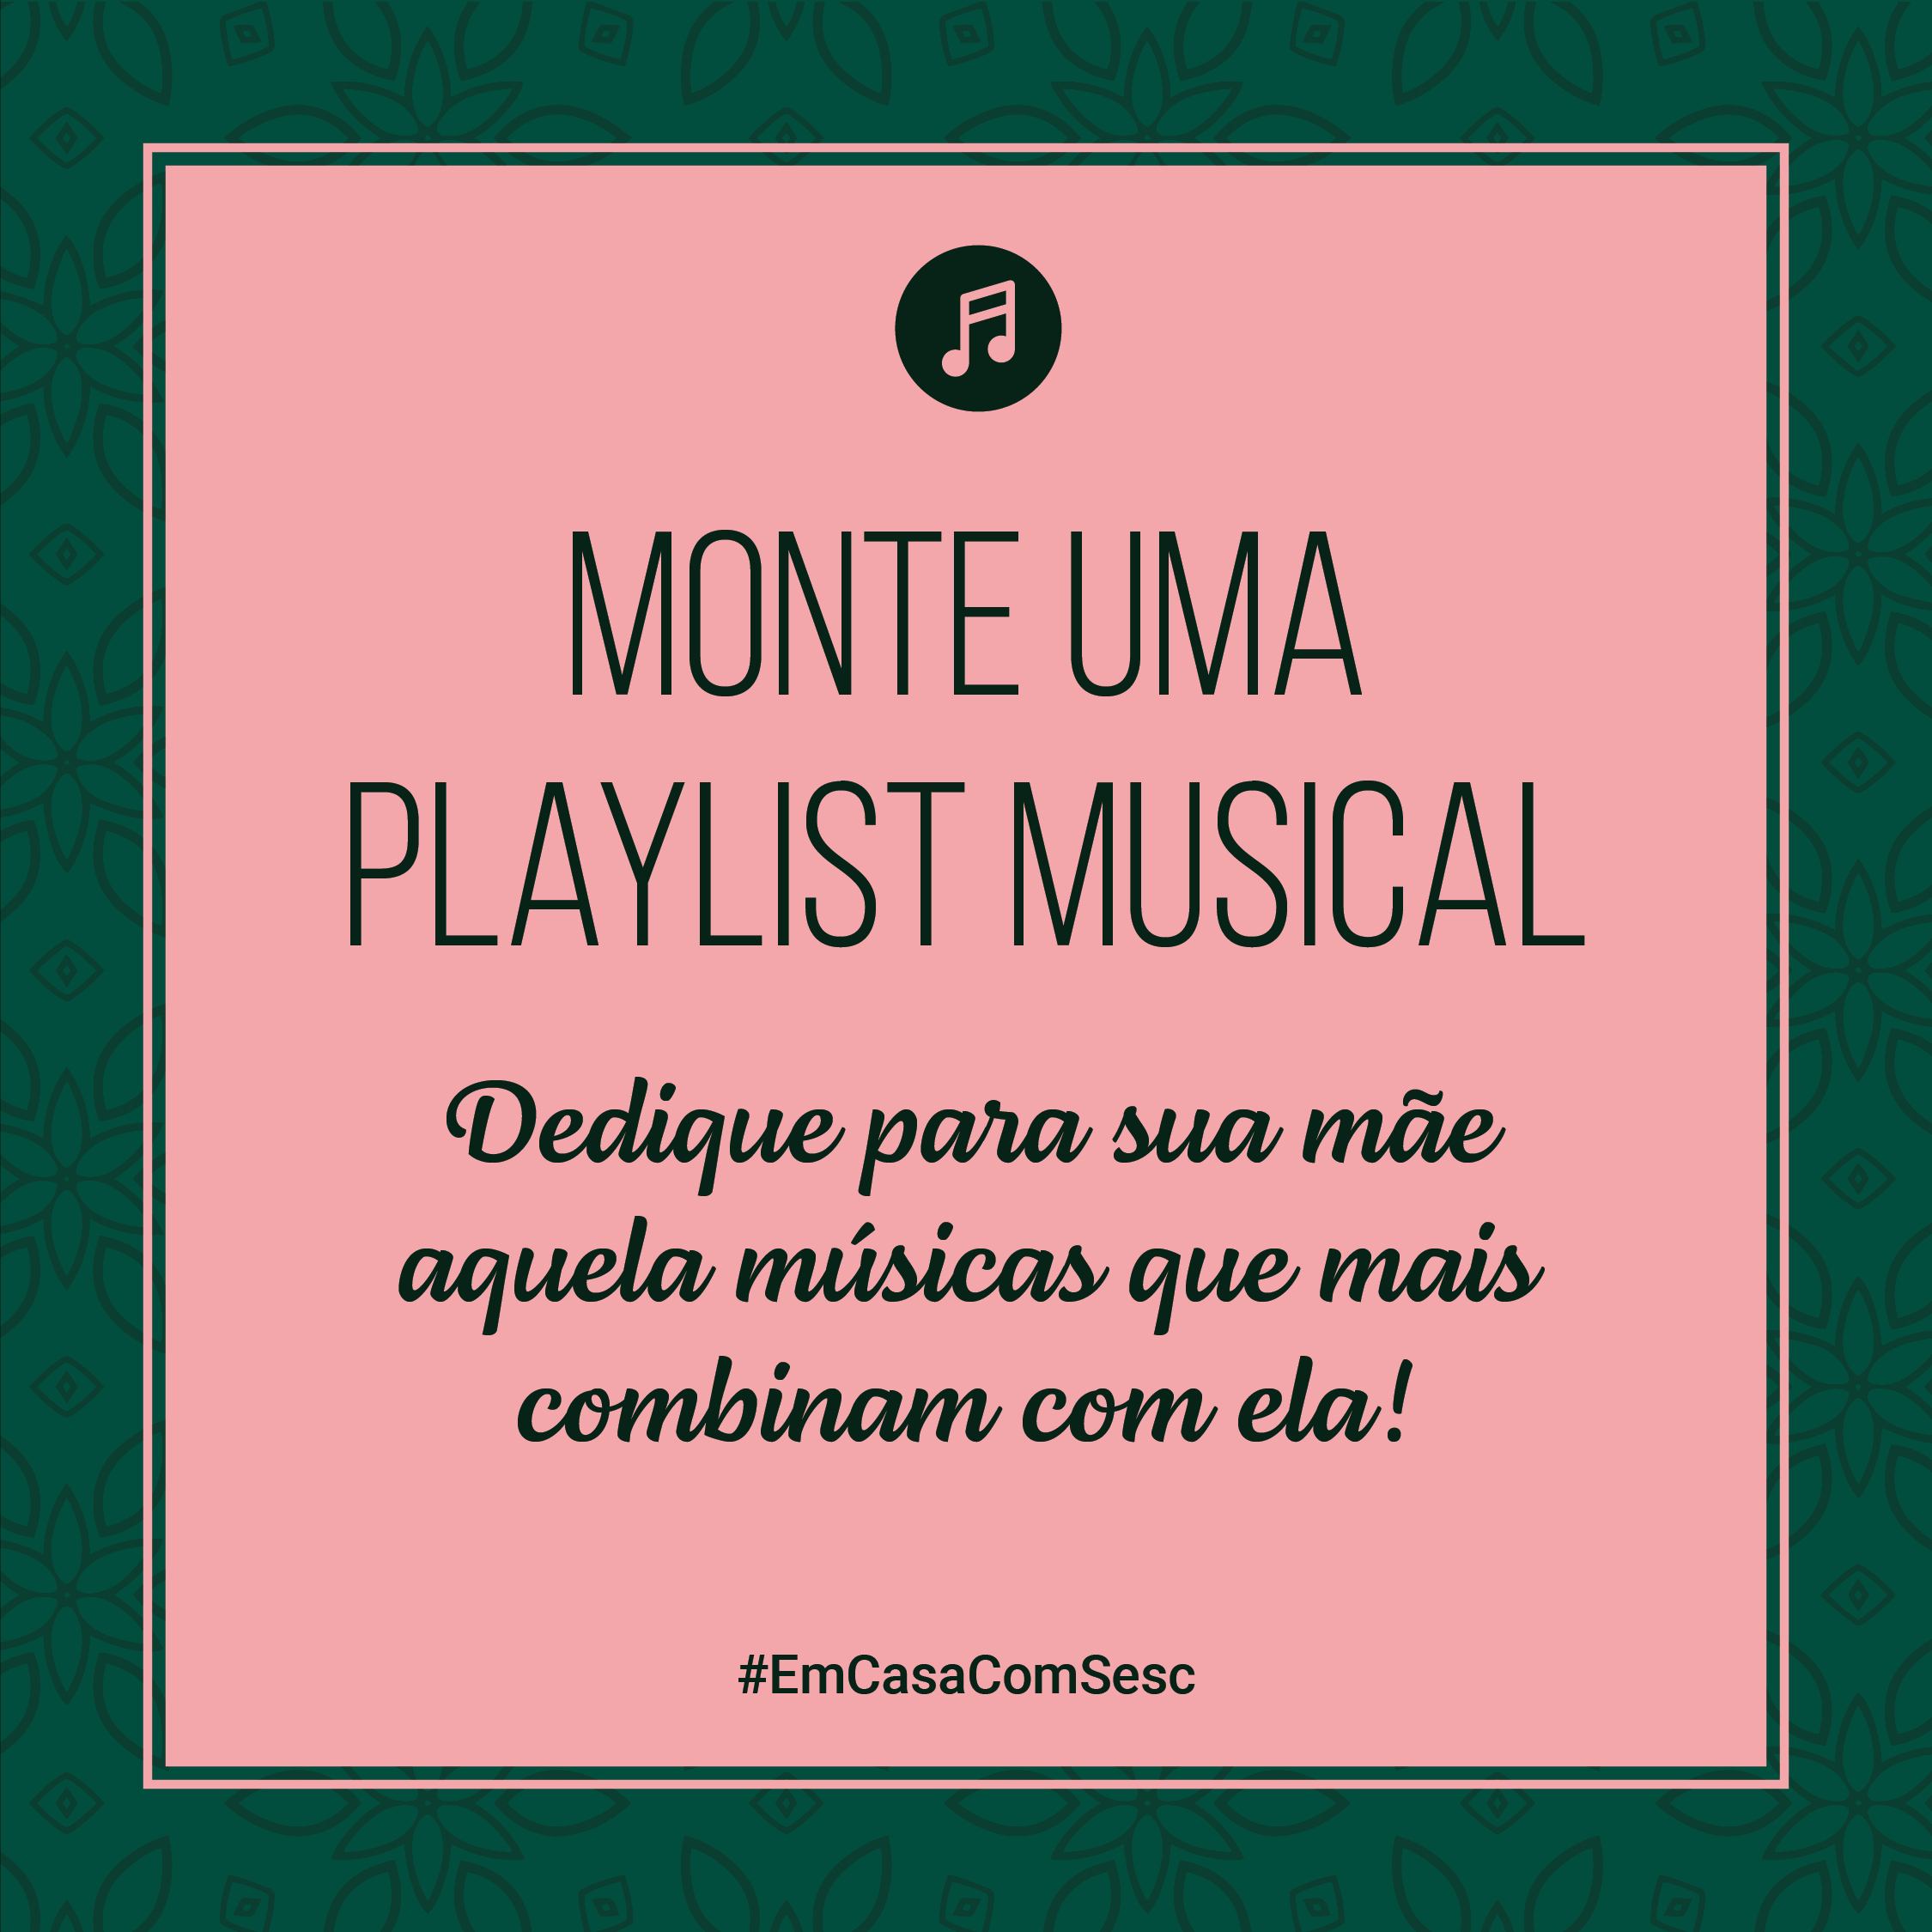 Monte uma playlist musical: Dedique para sua mãe aquela músicas que mais combinam com ela!